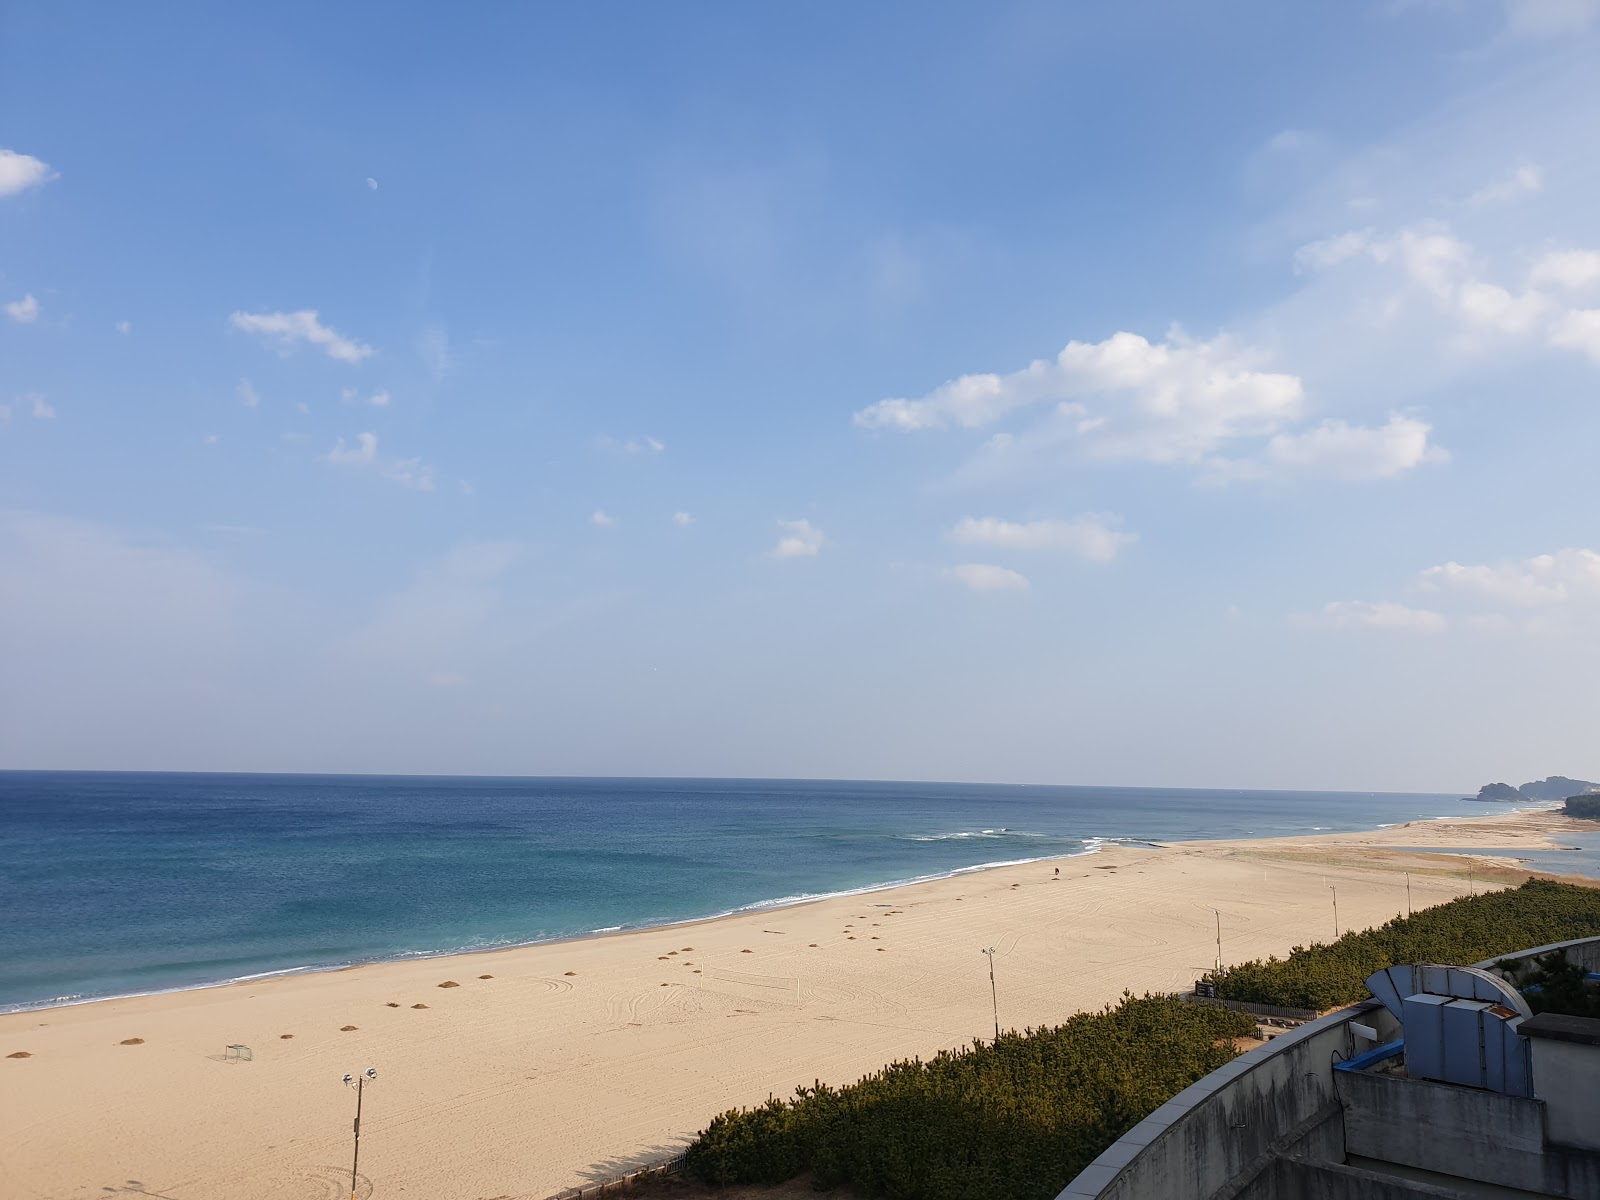 Fotografie cu Naksan Beach - locul popular printre cunoscătorii de relaxare